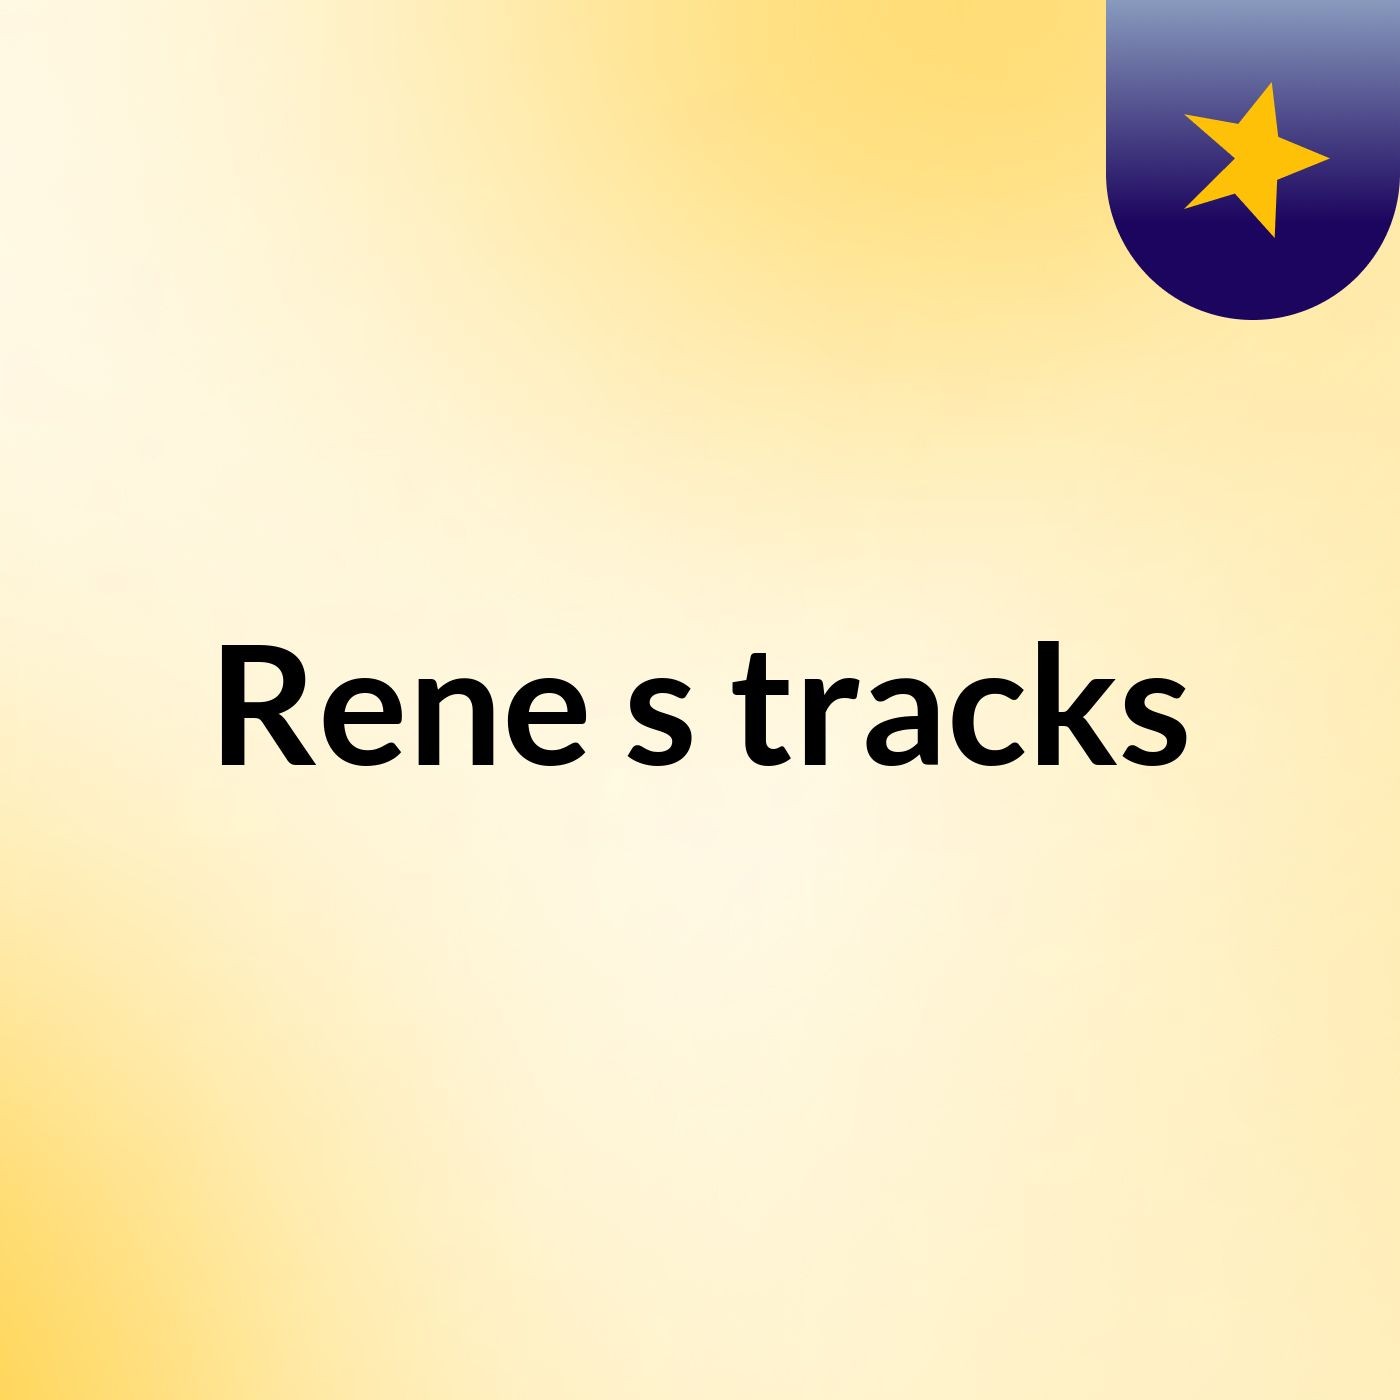 Rene's tracks